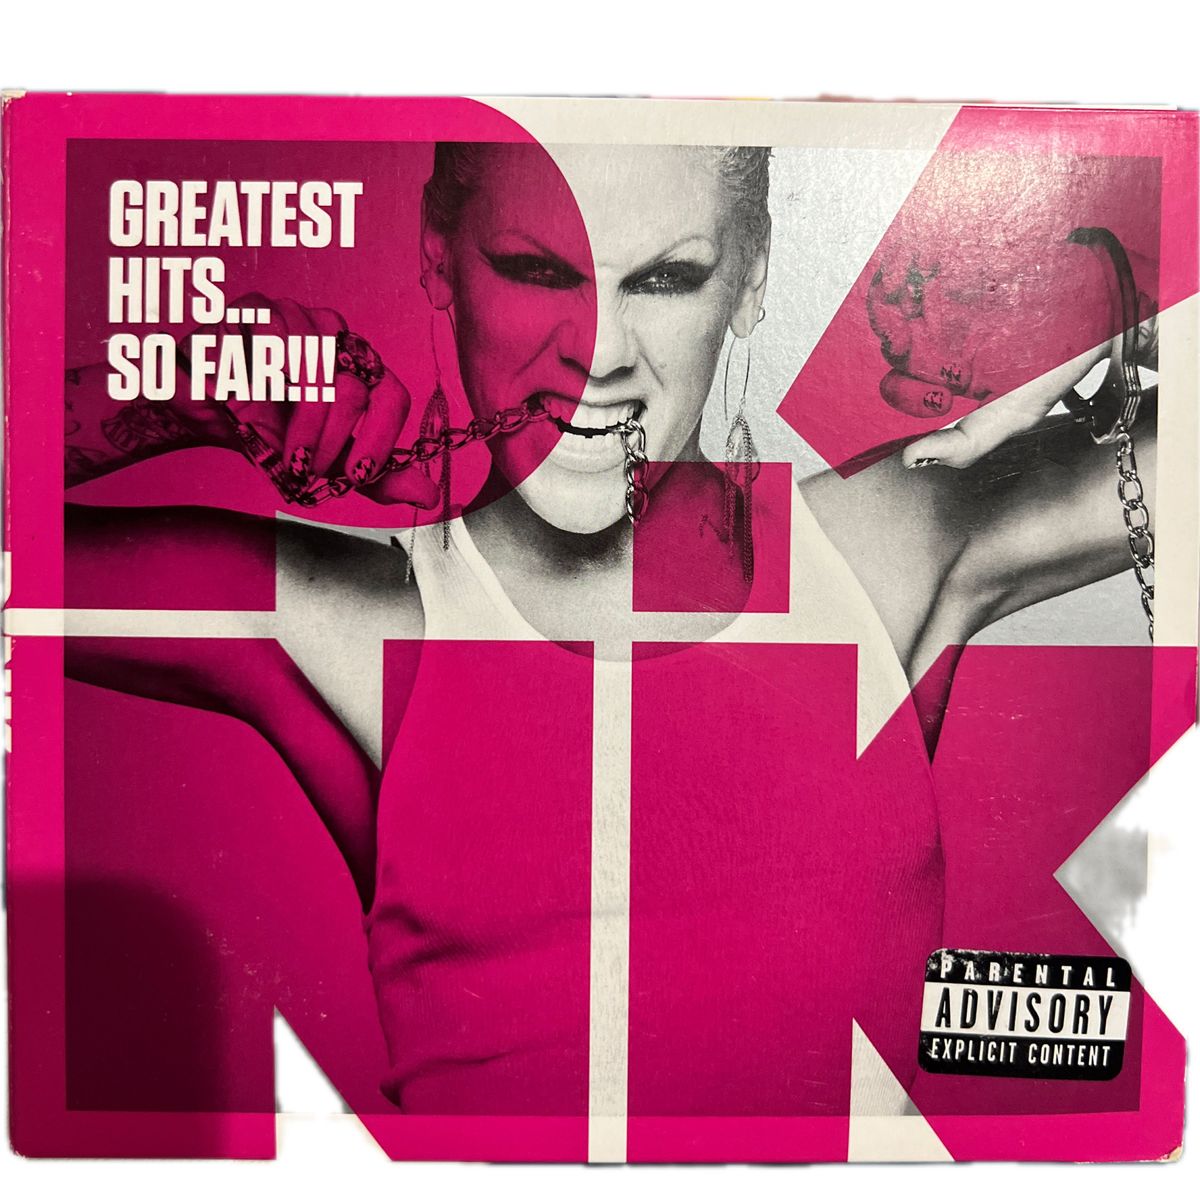  【結婚式用にもぜひ】P!NK   Greatest Hits...So Far!!! CD